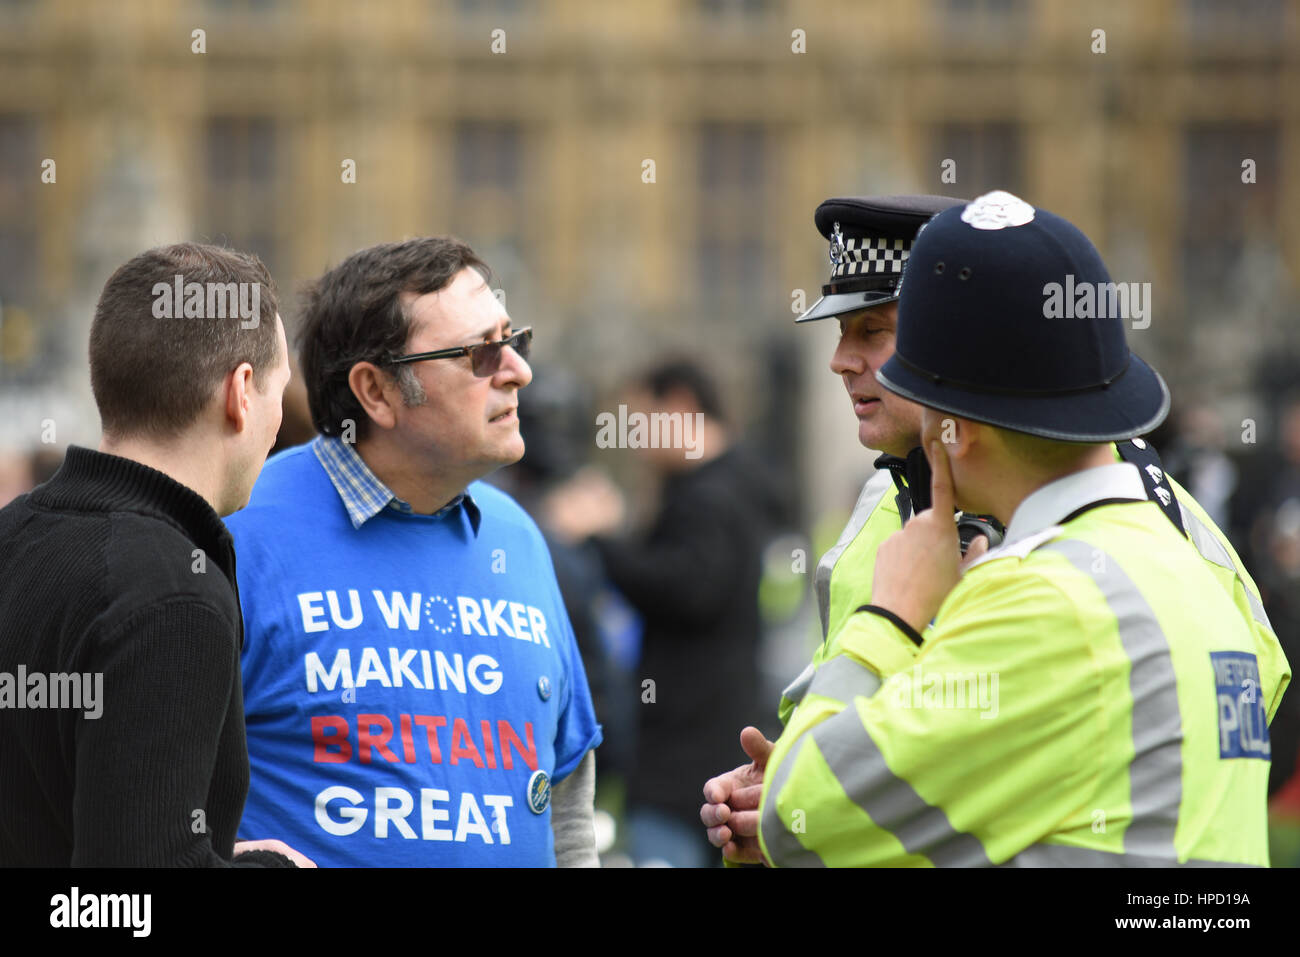 La police parle aux manifestants lors de la manifestation anti-racisme anti-Brexit sur Parliament Square, Londres, Royaume-Uni Banque D'Images